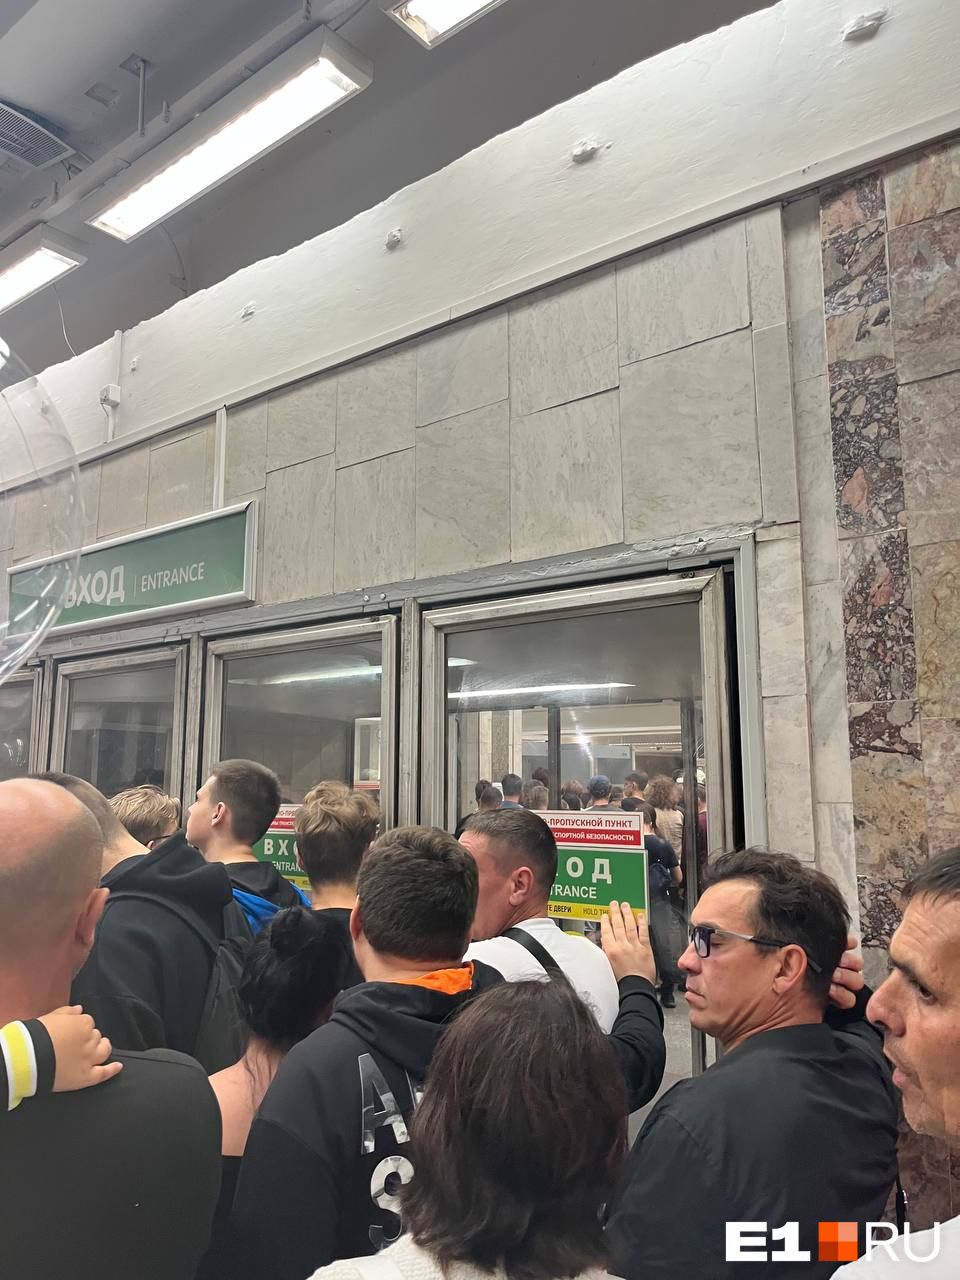 «Сильная давка»: в метро Екатеринбурга скопилась огромная толпа